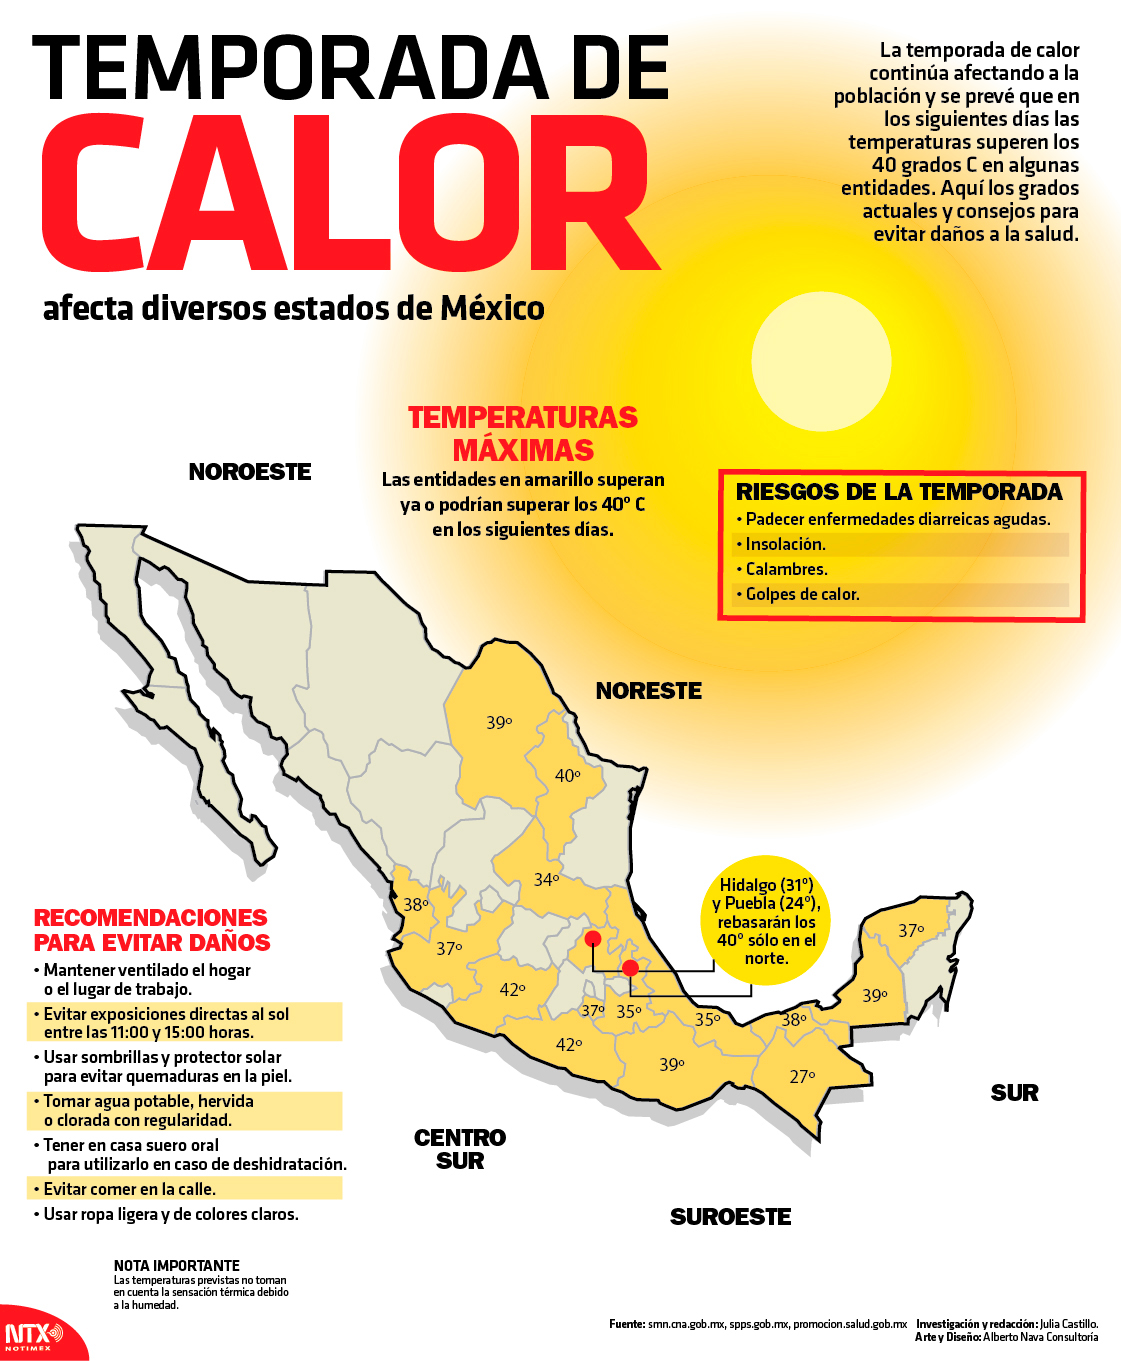 Calor afecta diversos estados de Mxico 